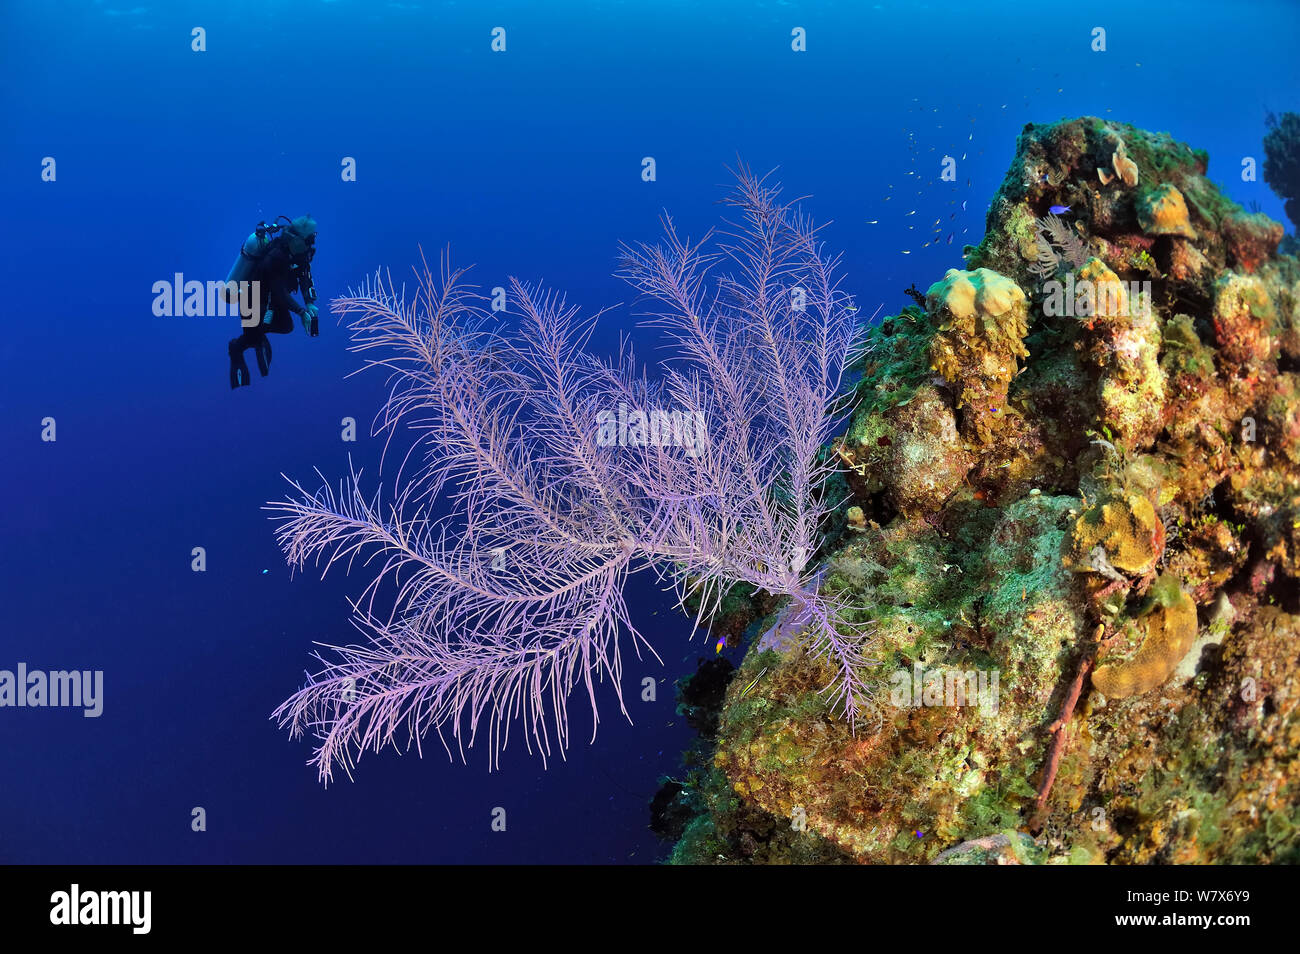 Les récifs près de plongeur de retour avec une mer bipennées plume (Pseudopterogorgia bipinnata), l'île de San Salvador / Colombus Island, aux Bahamas. Des Caraïbes. Juin 2013. Banque D'Images